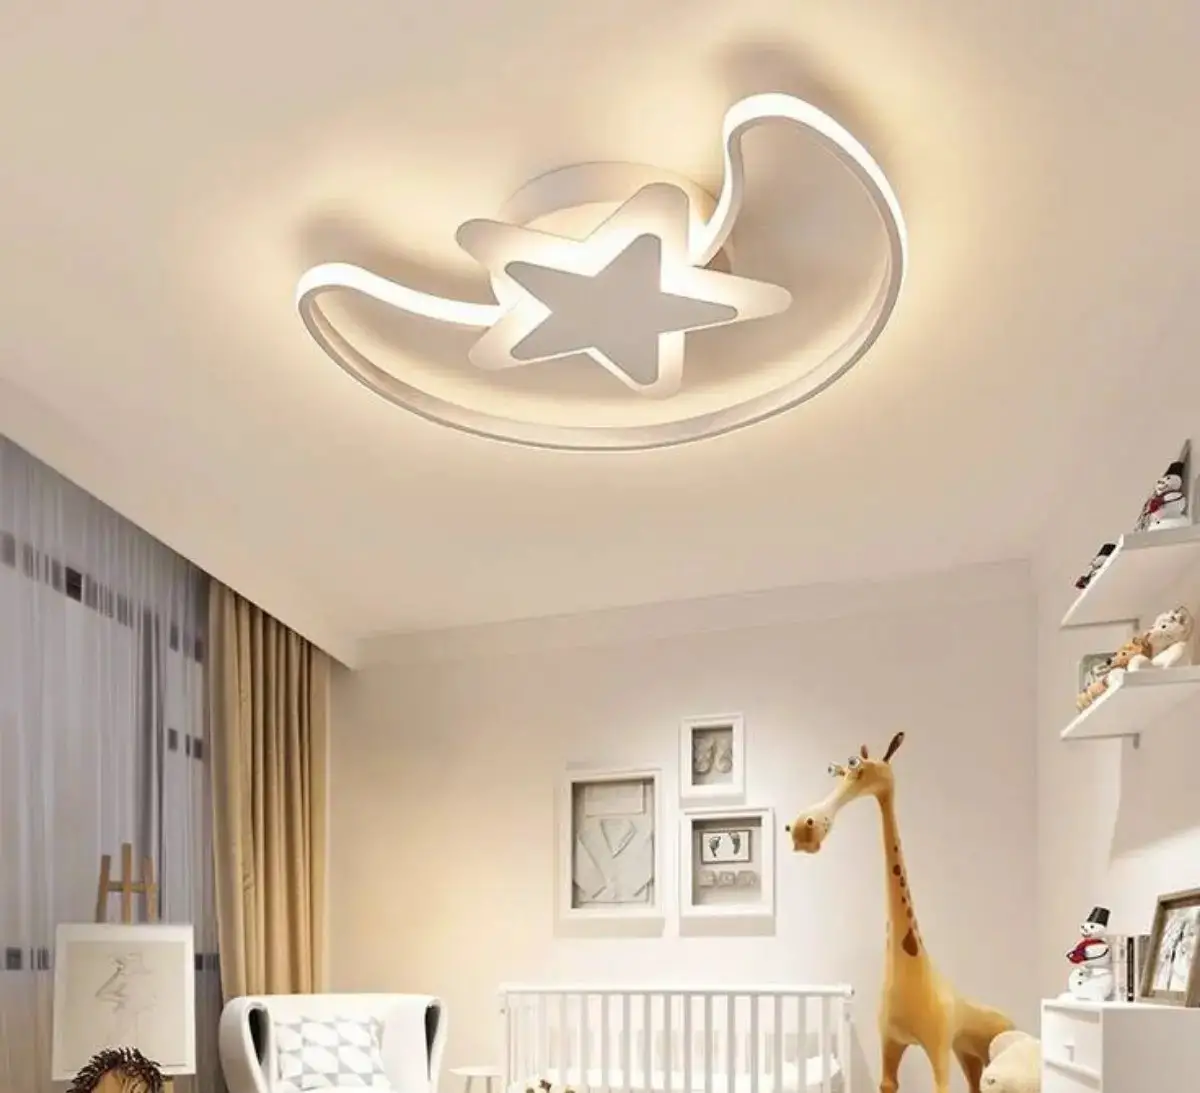 أشكال جبس بورد غرف نوم اطفال اولاد 20222